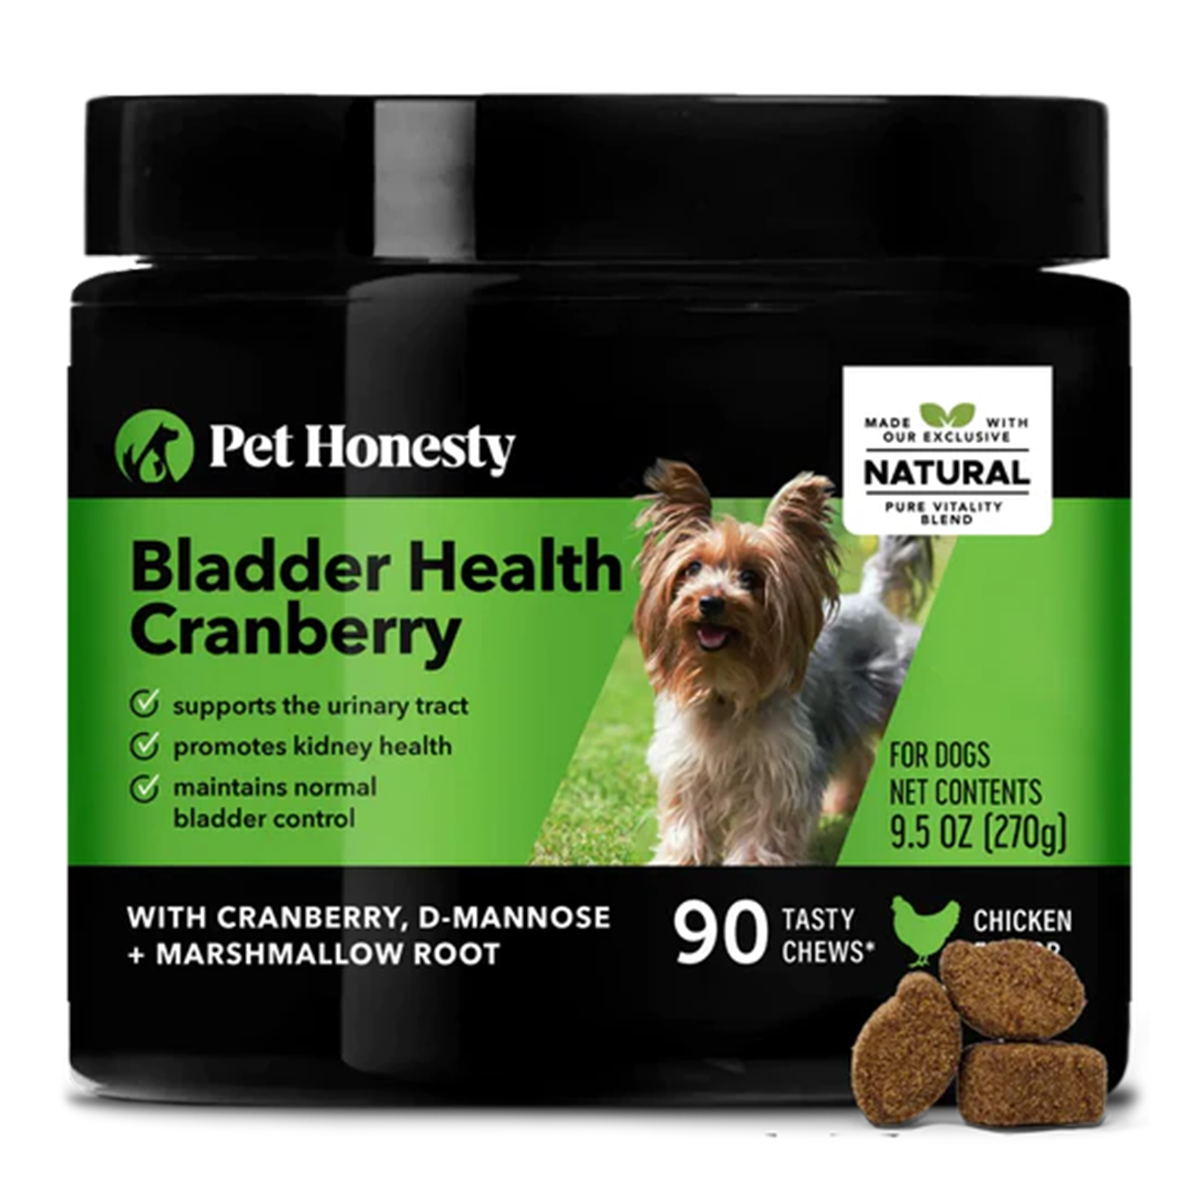 Pet Honesty Bladder Health Cranberry Dog Chew Supplement - Chicken